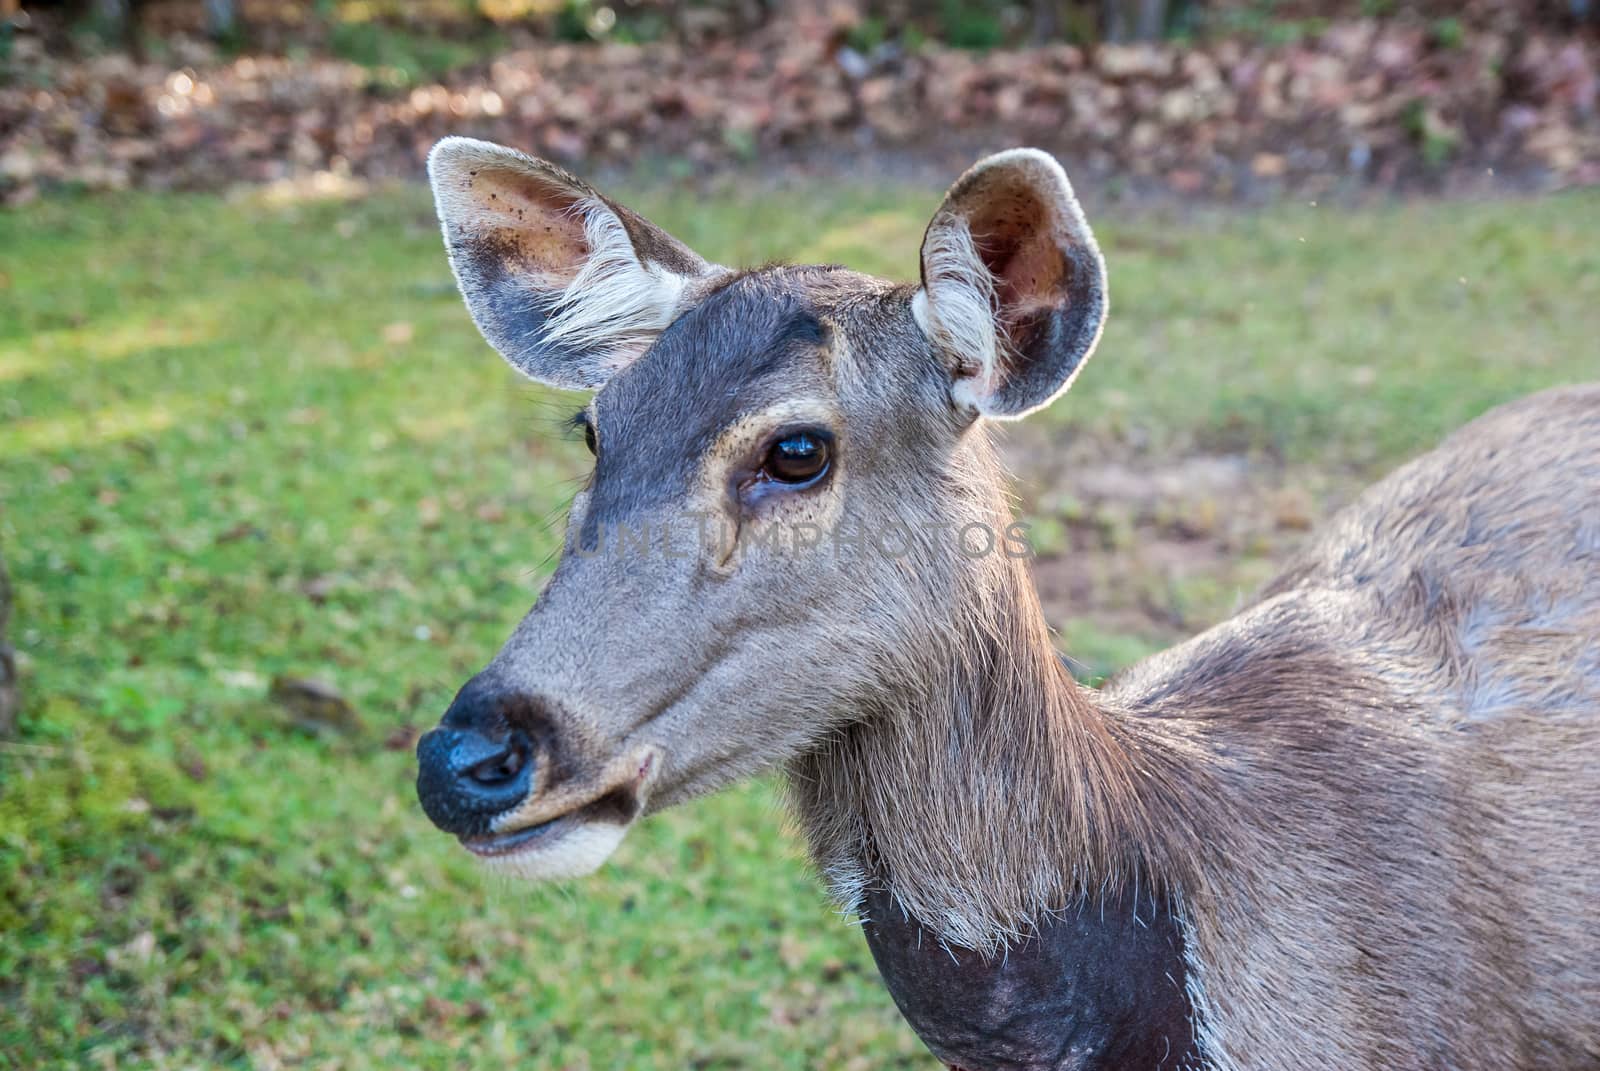 Closeup head shot of a whitetail deer.